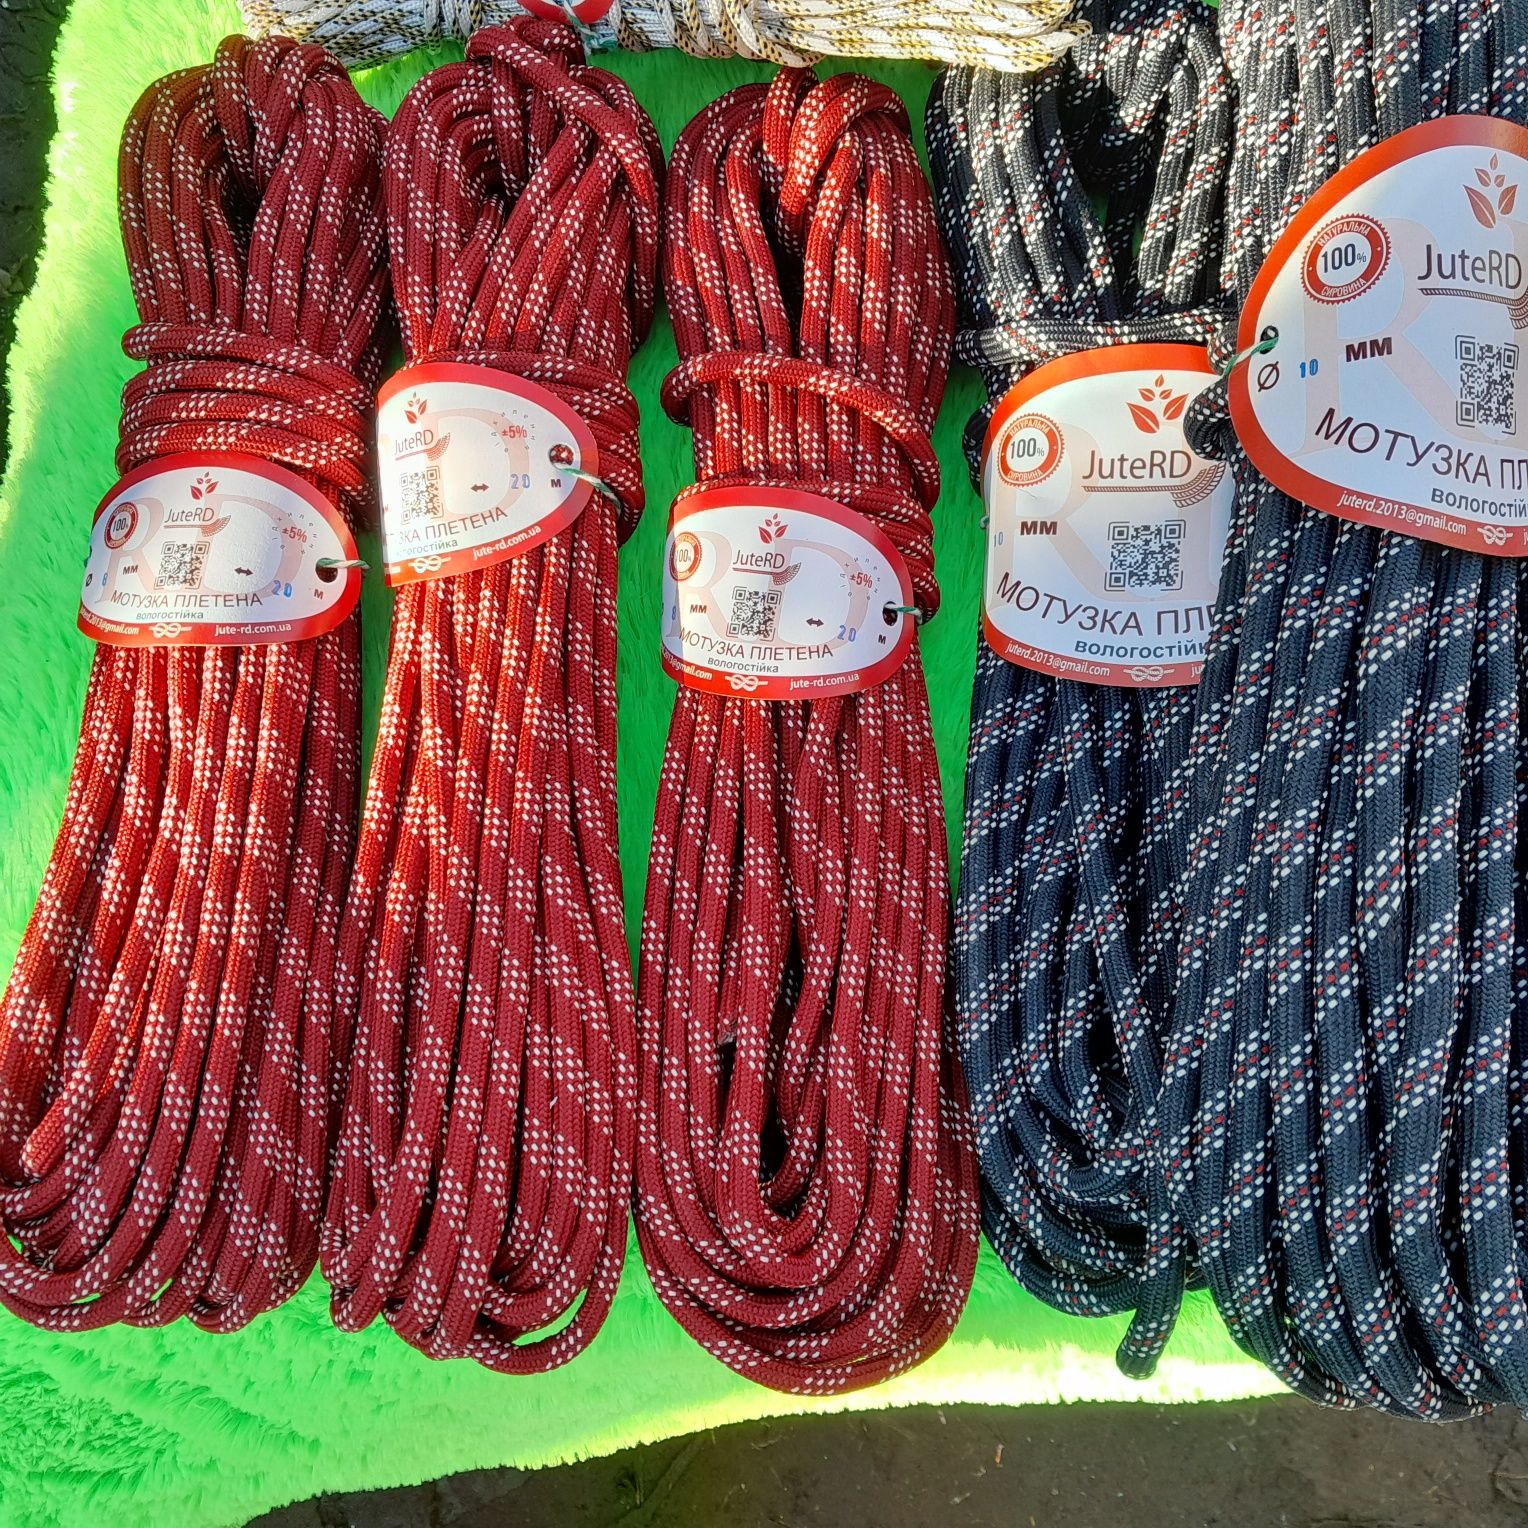 Мотузка плетеная.Диаметр от 1.5мм до 12мм